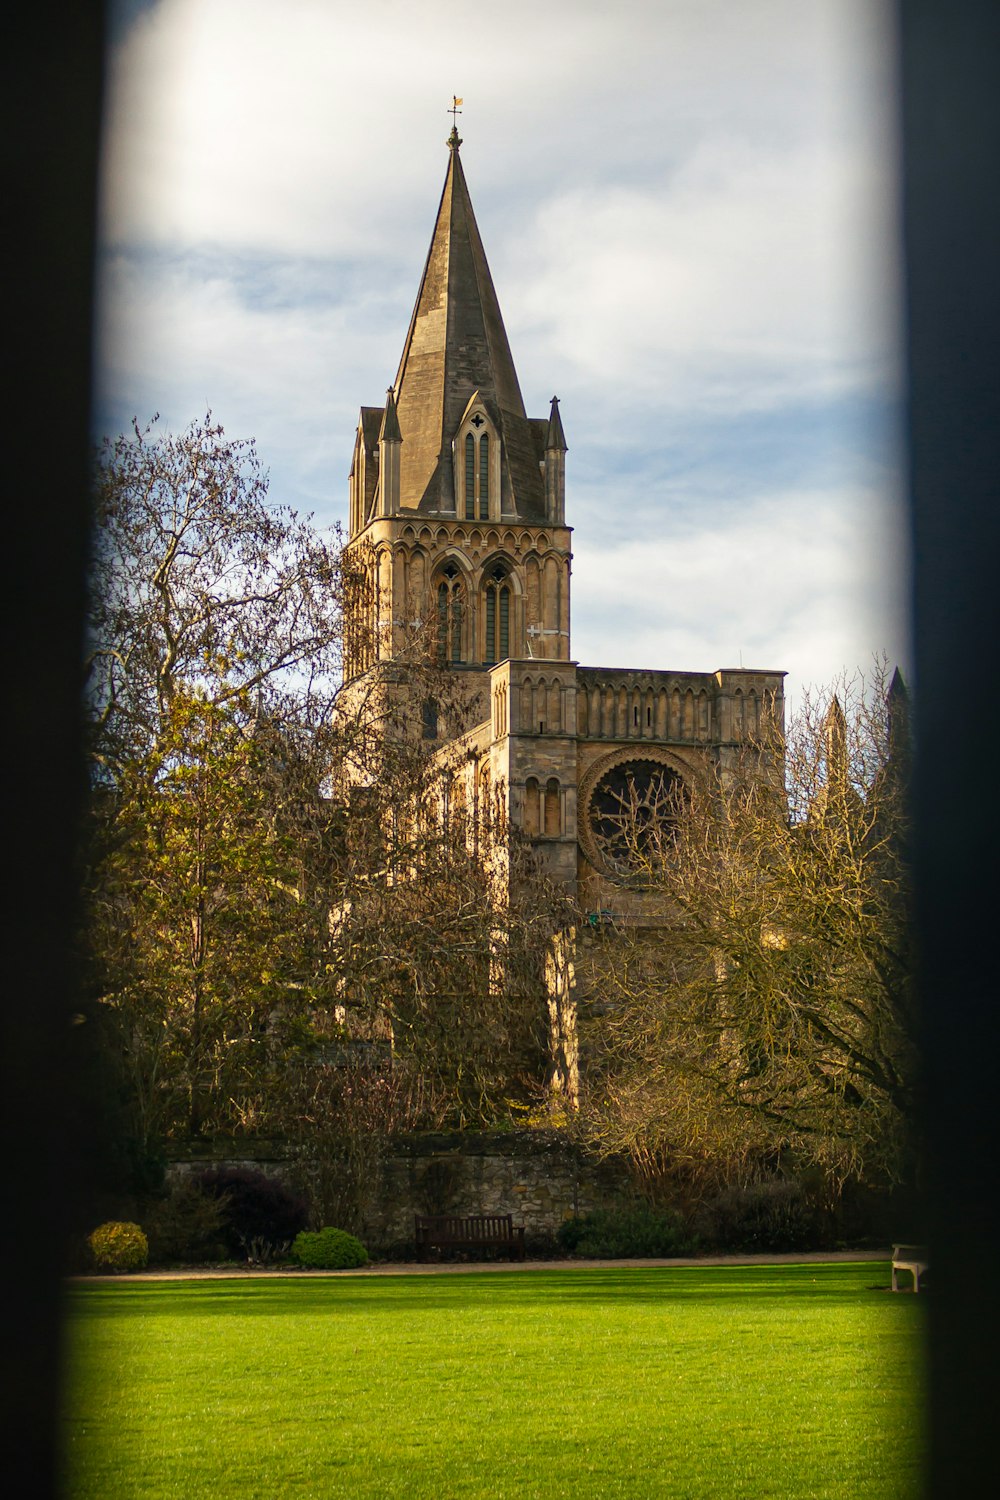 a view of a church through a window